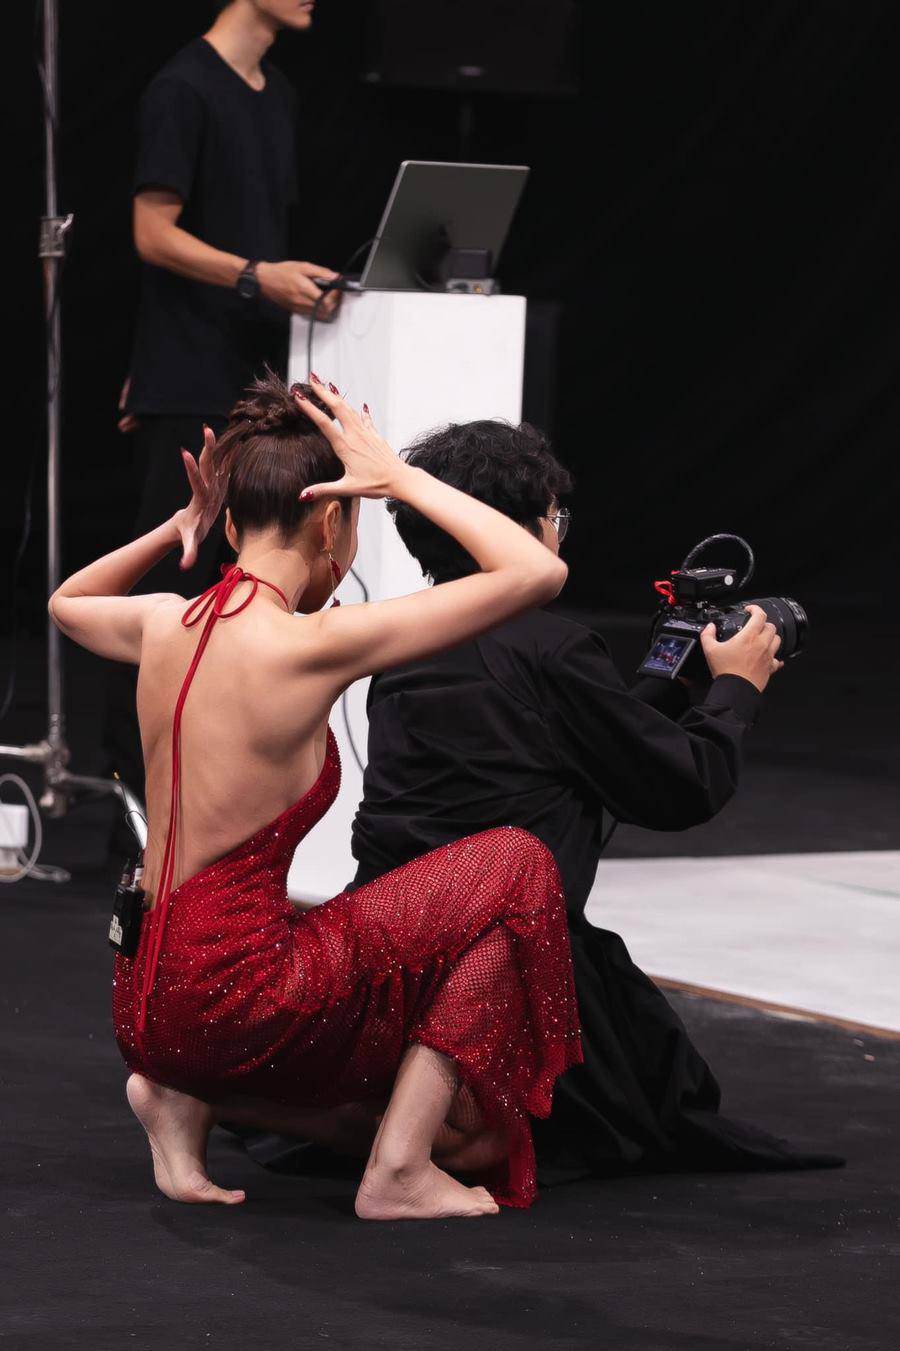 Bóng lưng quyến rũ của Thanh Hằng trên set quay, hướng dẫn thí sinh tạo dáng.